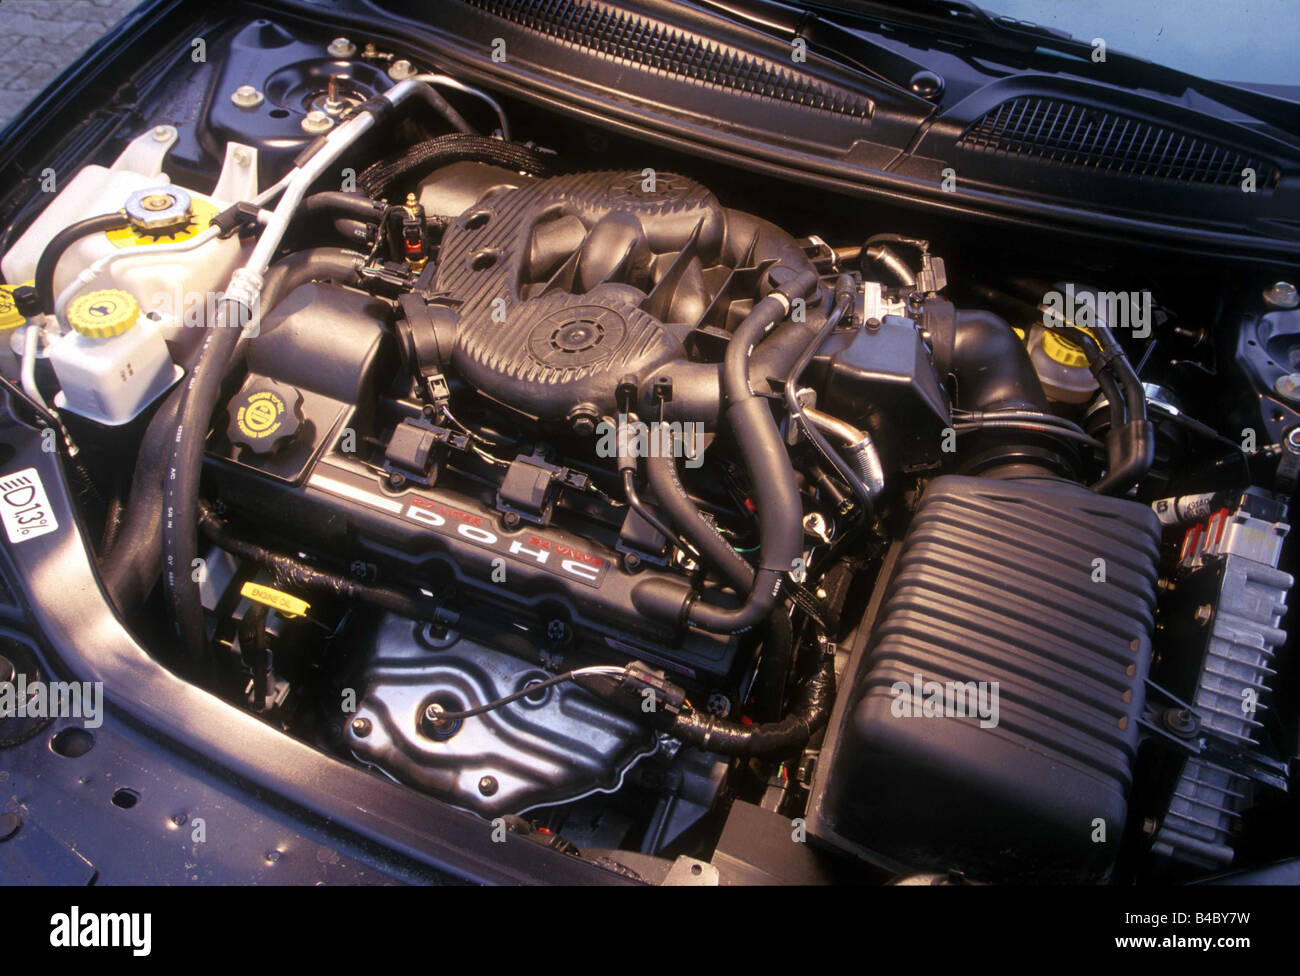 2001 chrysler sebring motor